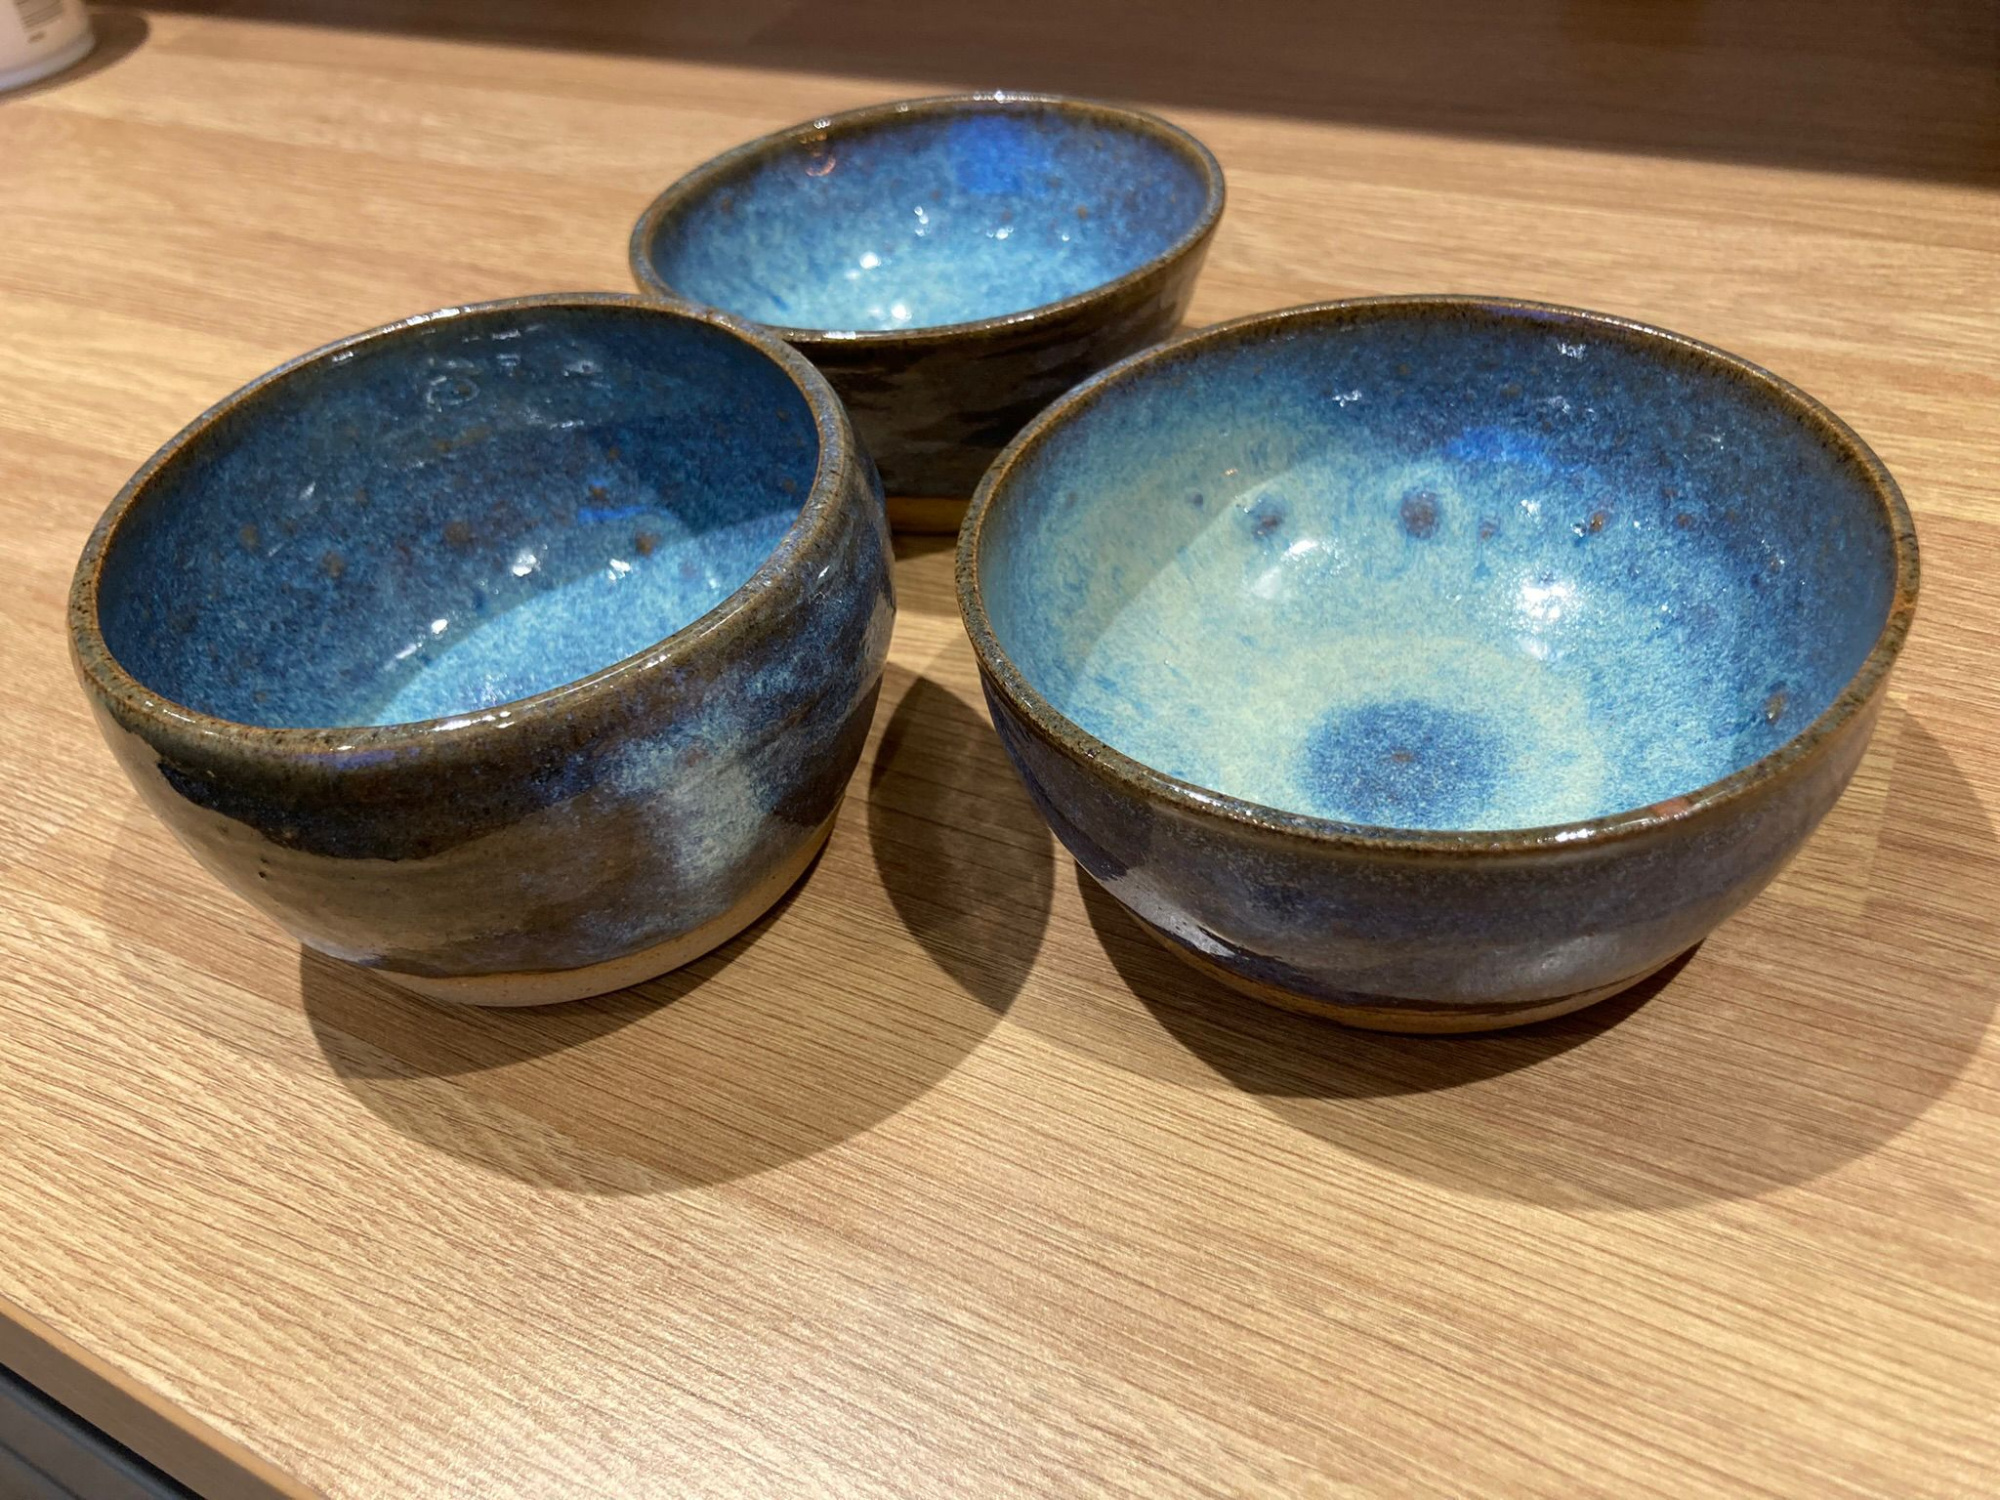 xmas bazaar bowls